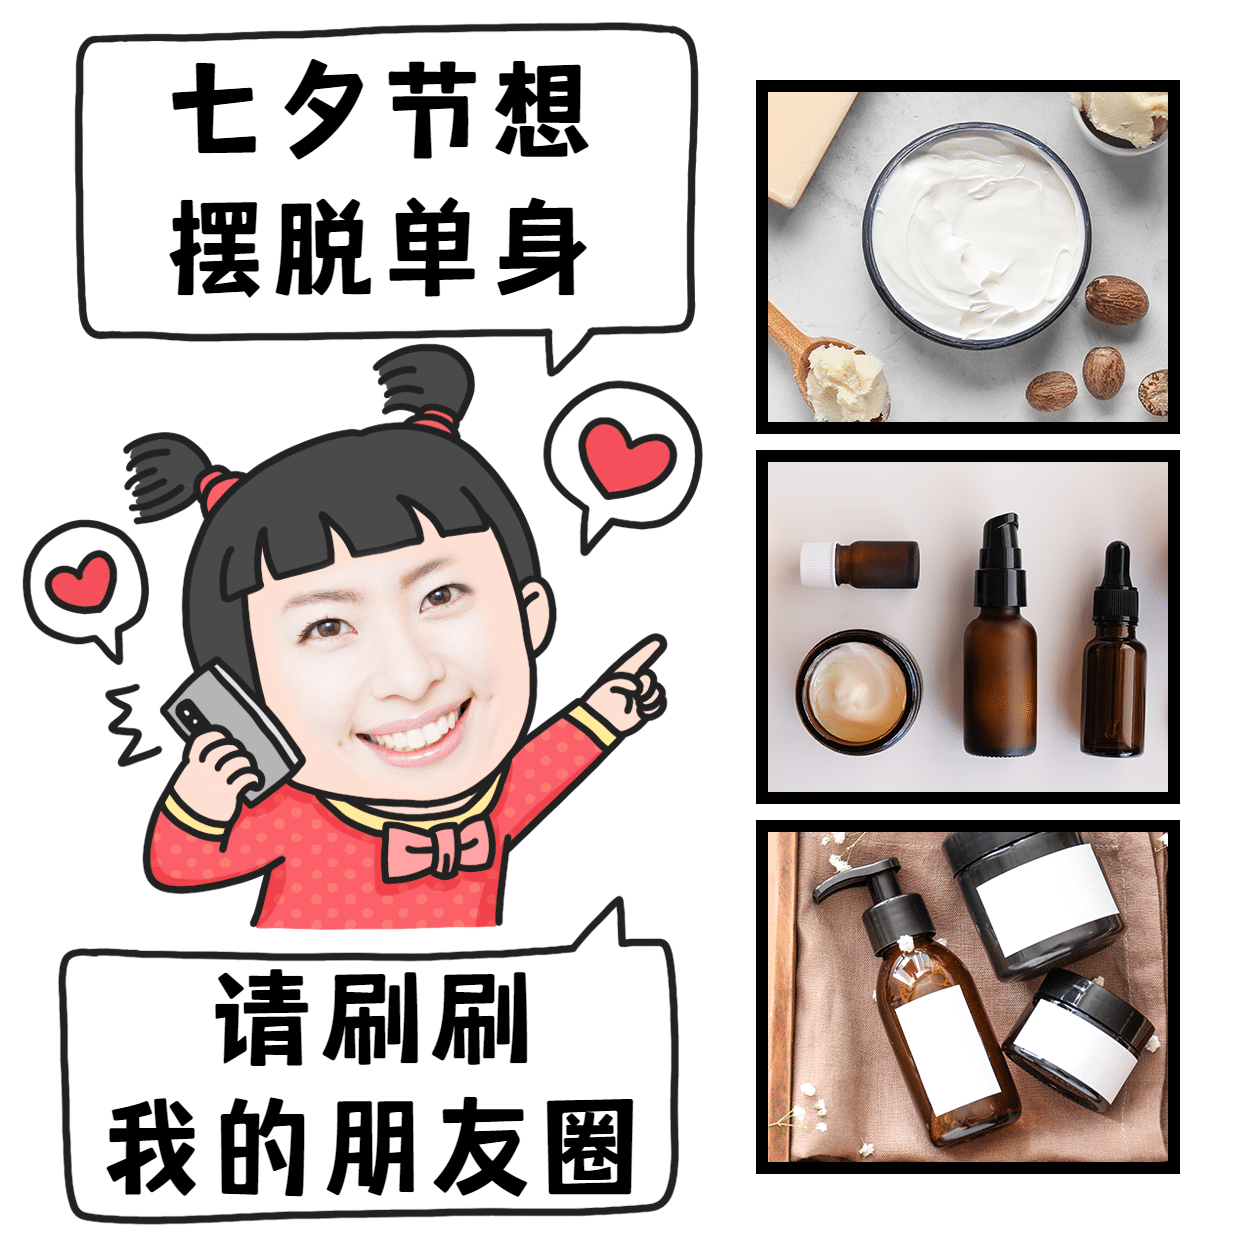 七夕营销表情包趣味晒产品手绘爱心预览效果